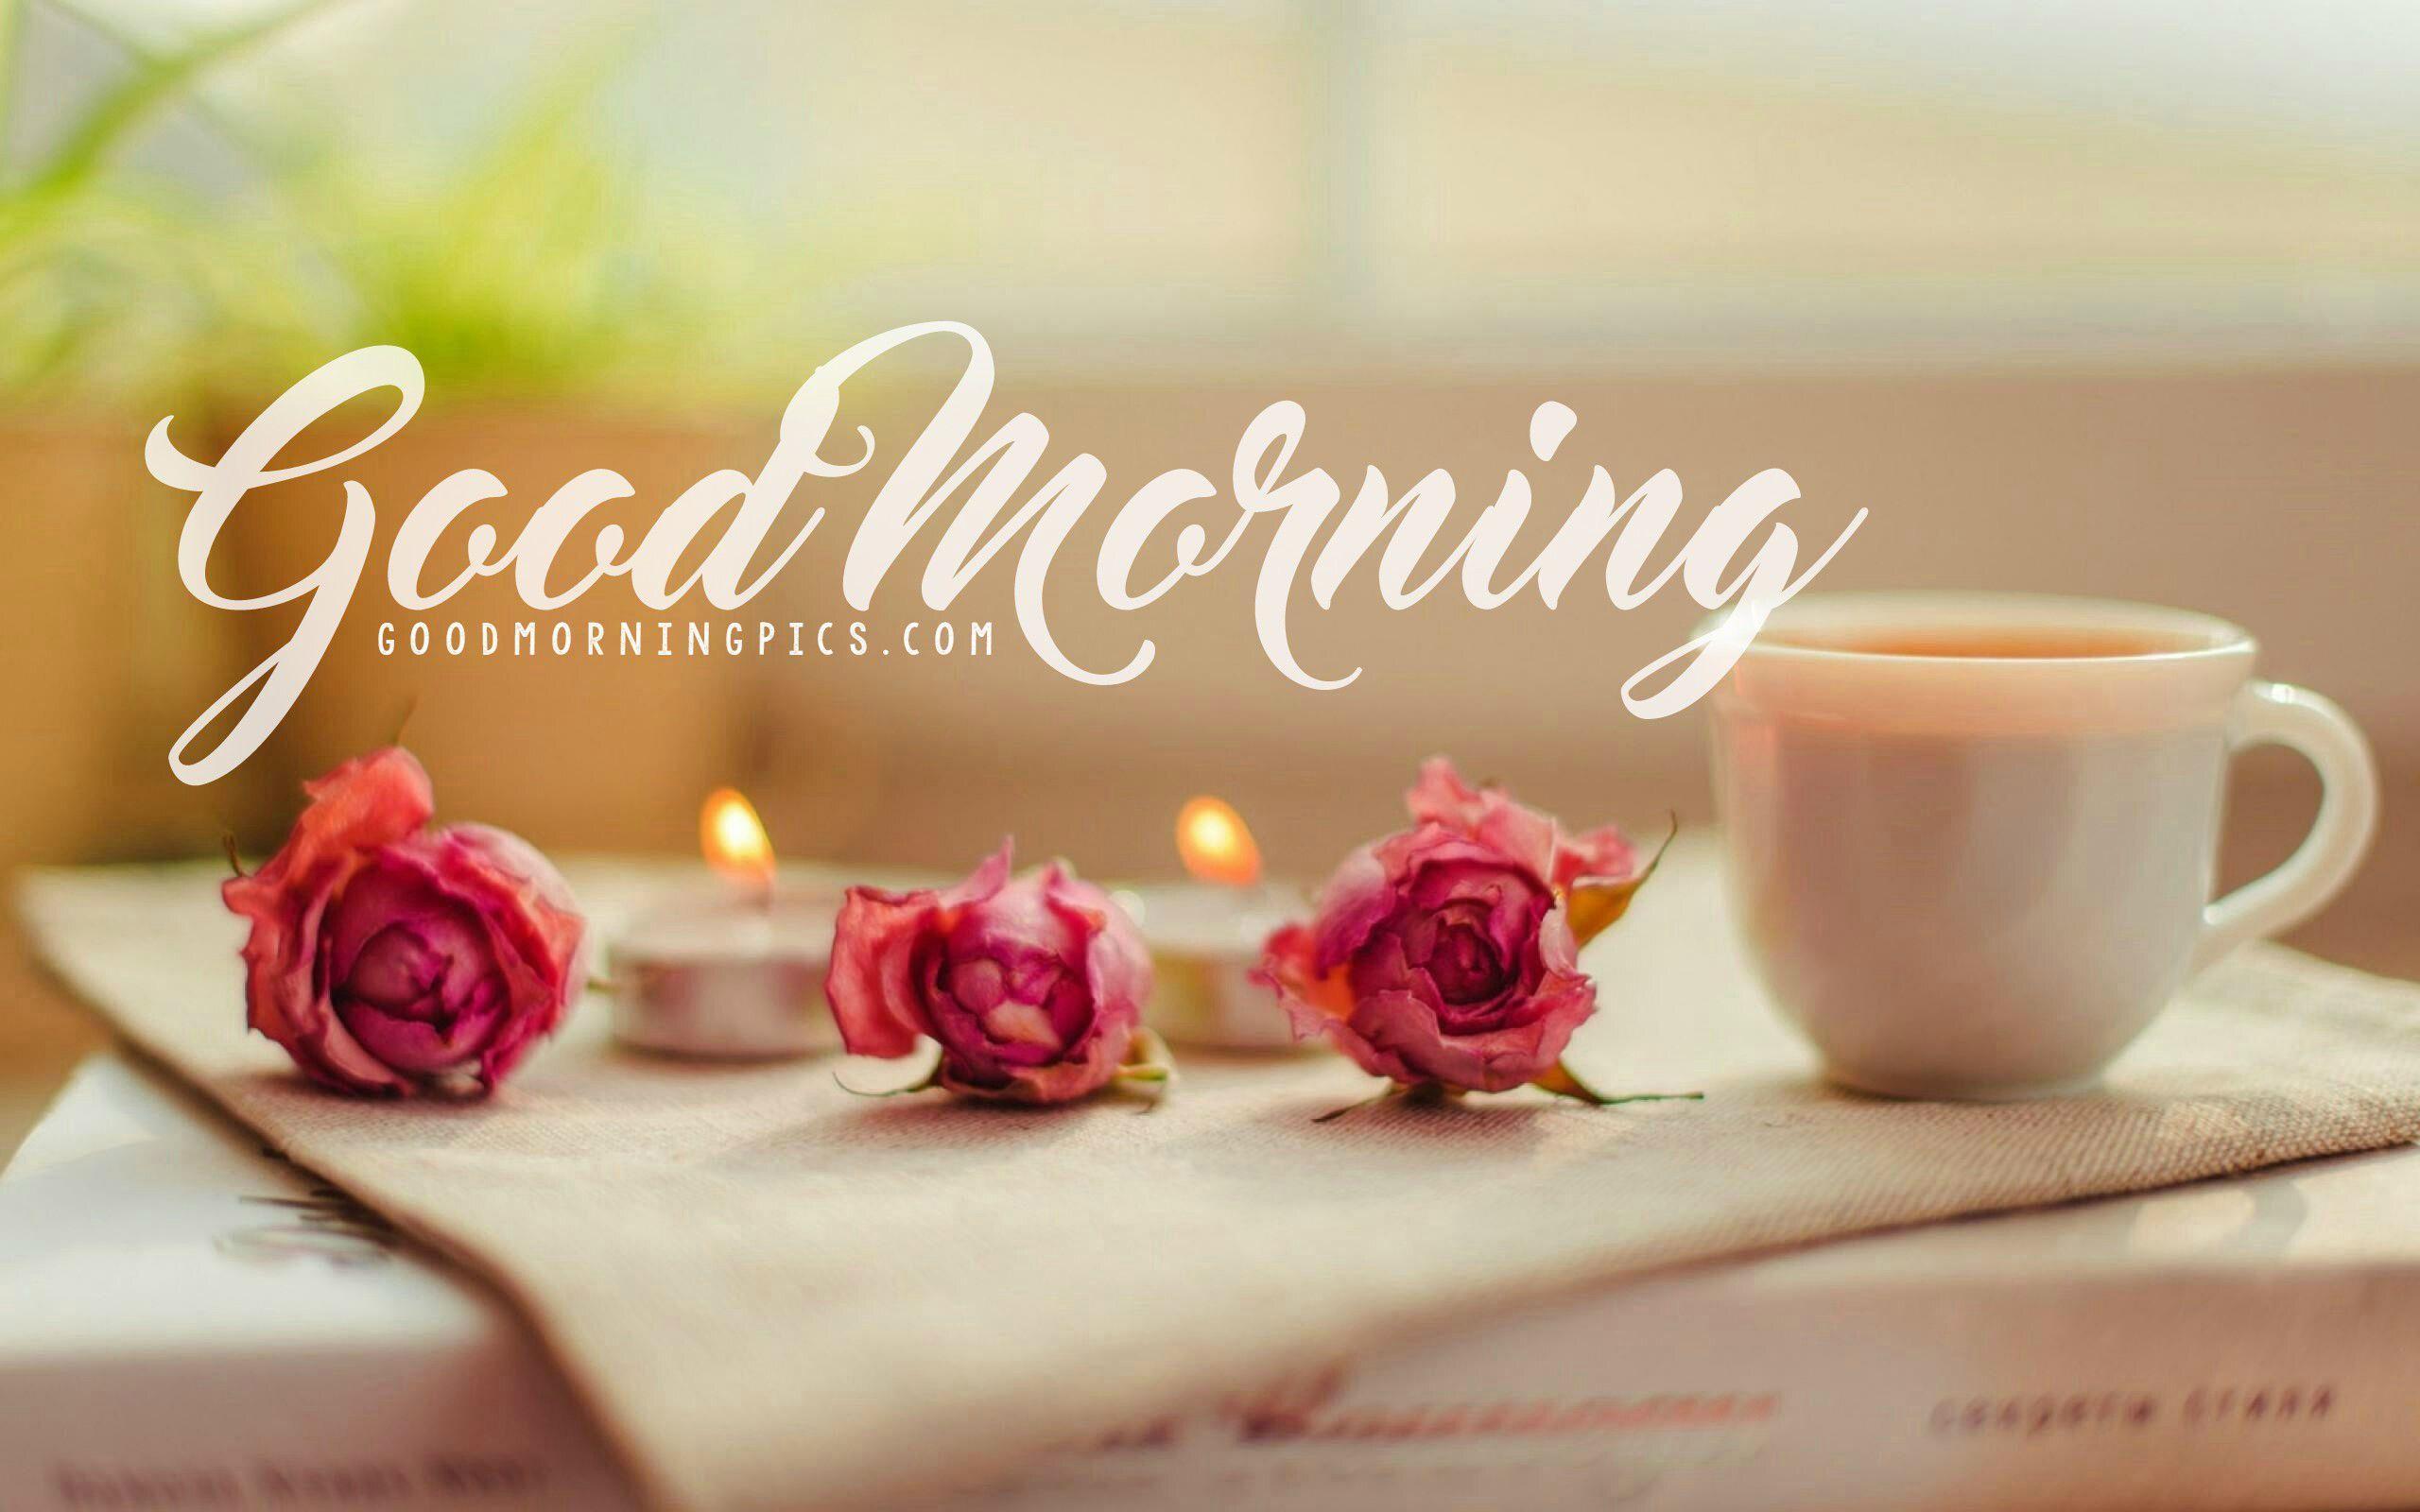 Good morning class. Утренние цветы. Кофе и цветы. Утренние цветы картинки. Кофе с цветами.